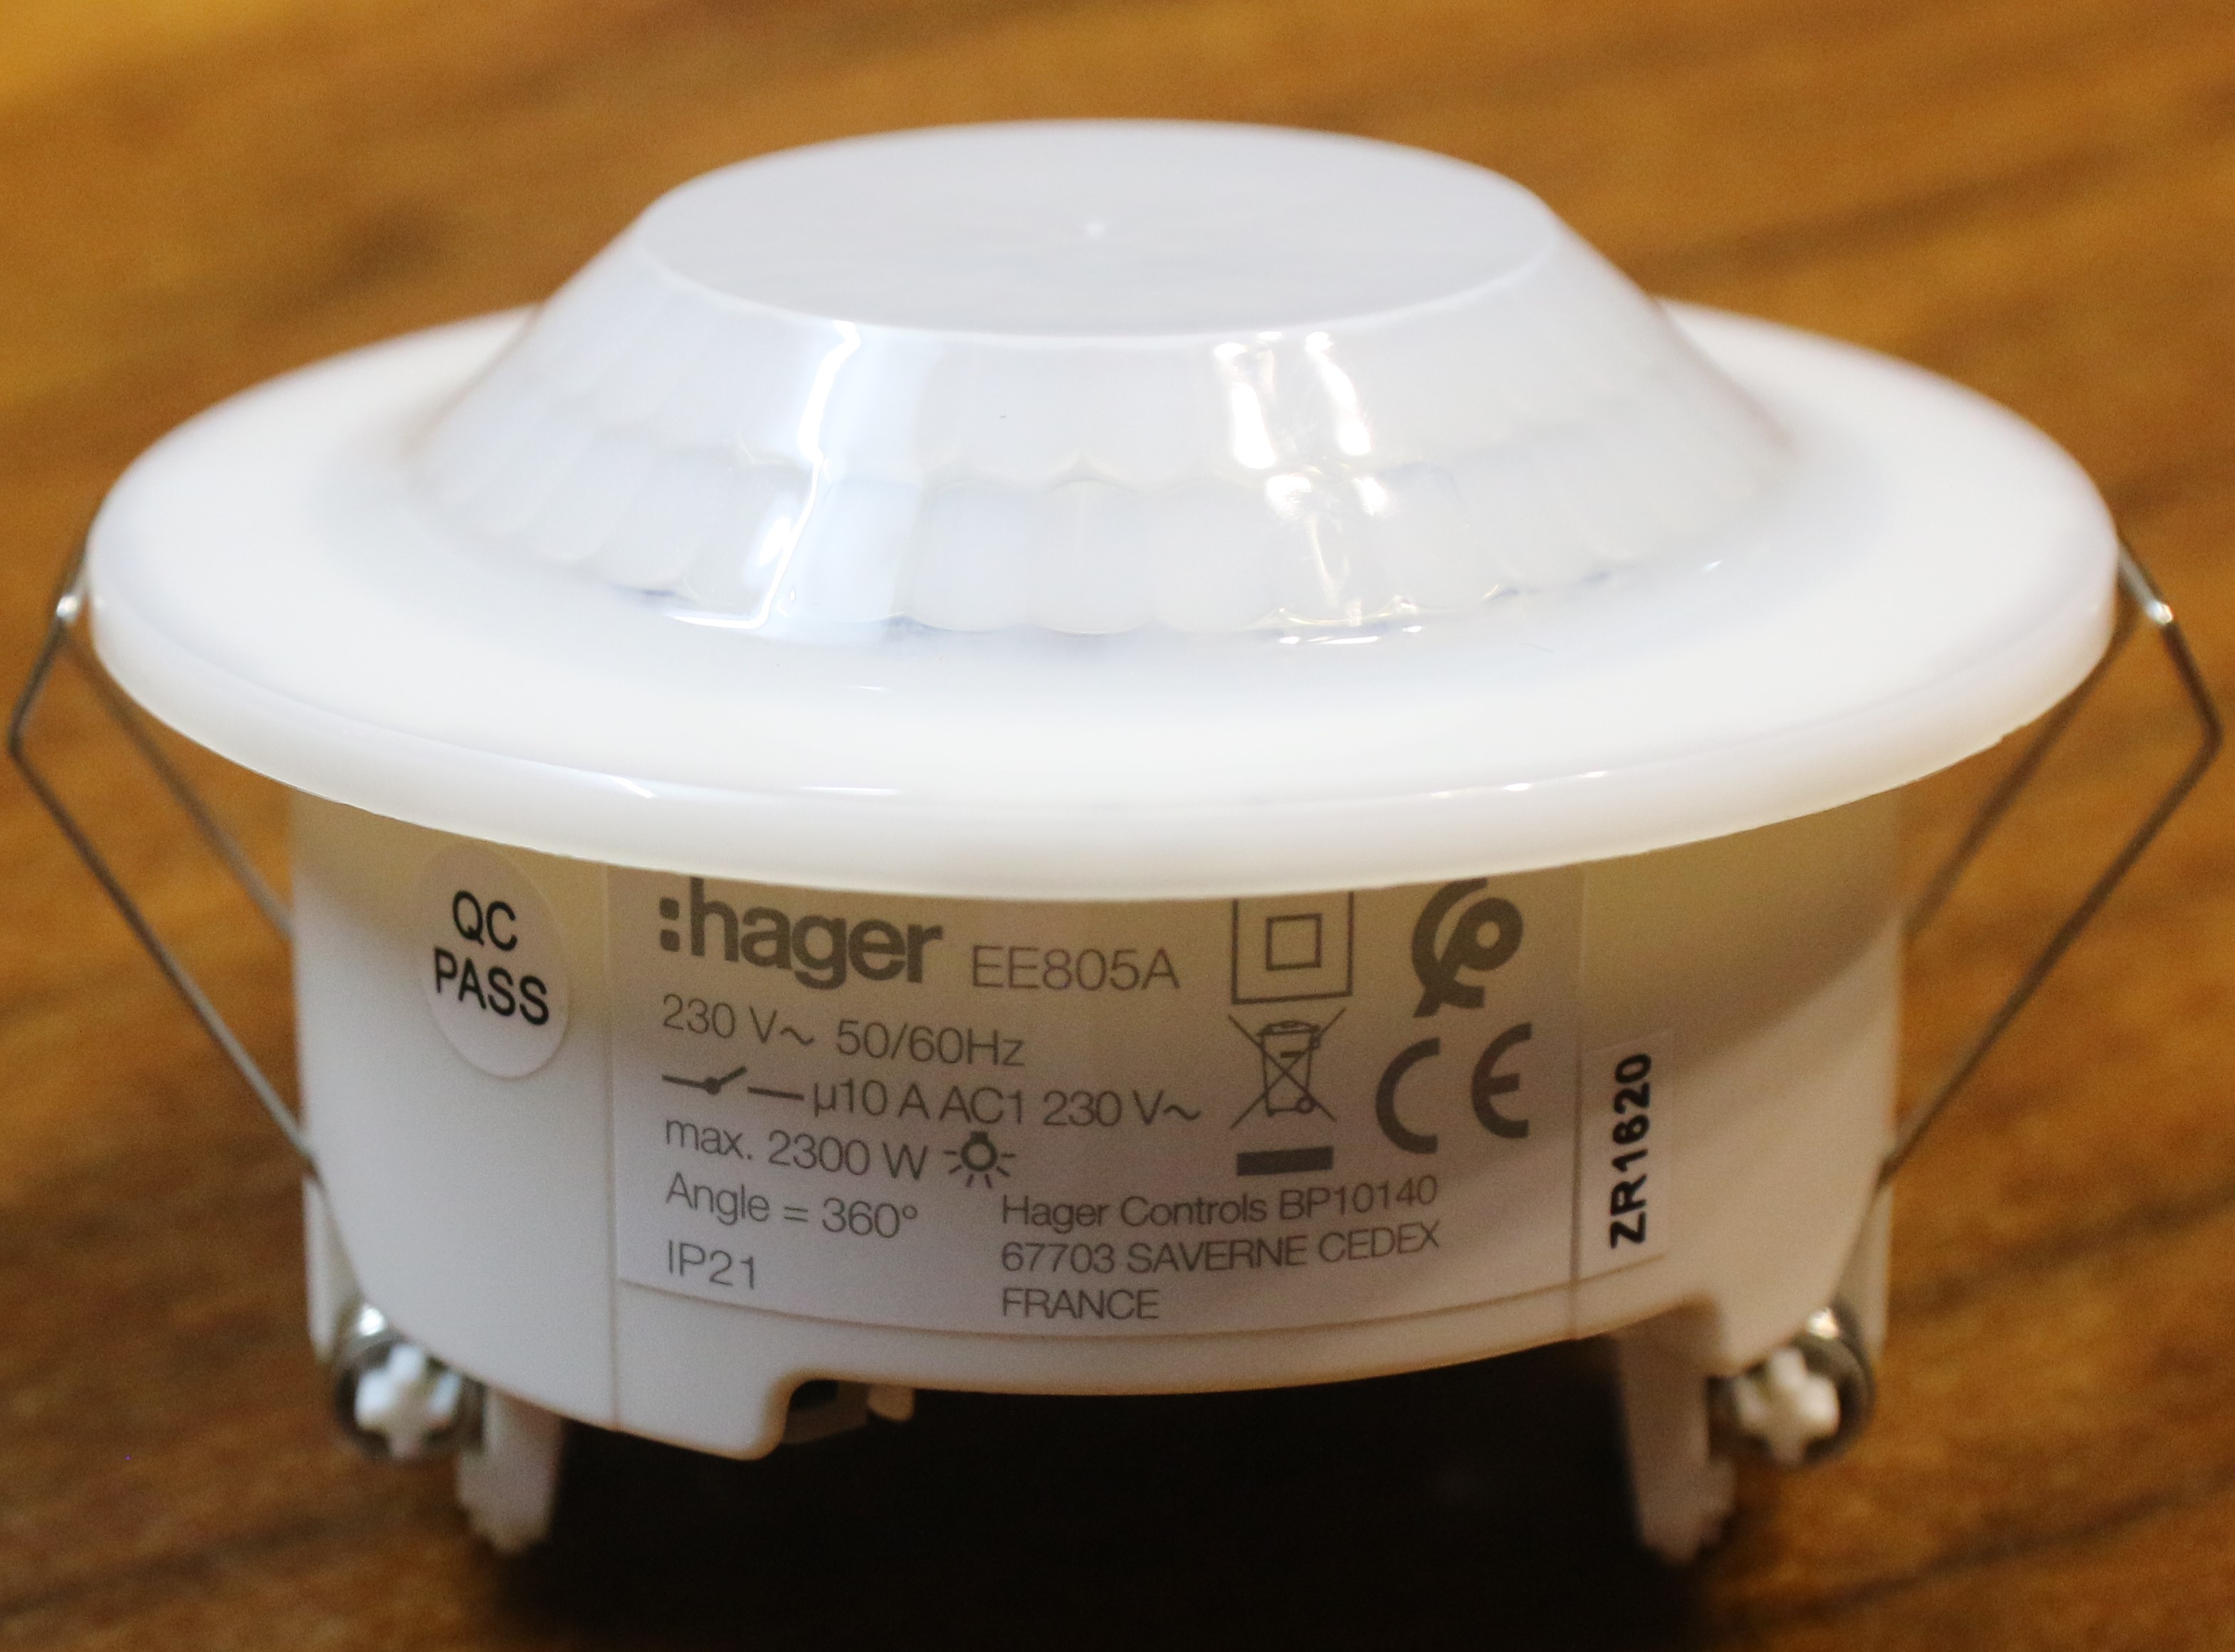 CẢM BIẾN CHUYỂN ĐỘNG GẮNG ÂM TRẦN EE805A - HAGER - PHÁP, Loại cảm biến dùng cho chiếu sáng tự động, báo động. Thiết kế nhỏ gọn phù hợp mọi không gian, tầm quét rộnh đảm bảo cho khôing gian sử dụng rộng